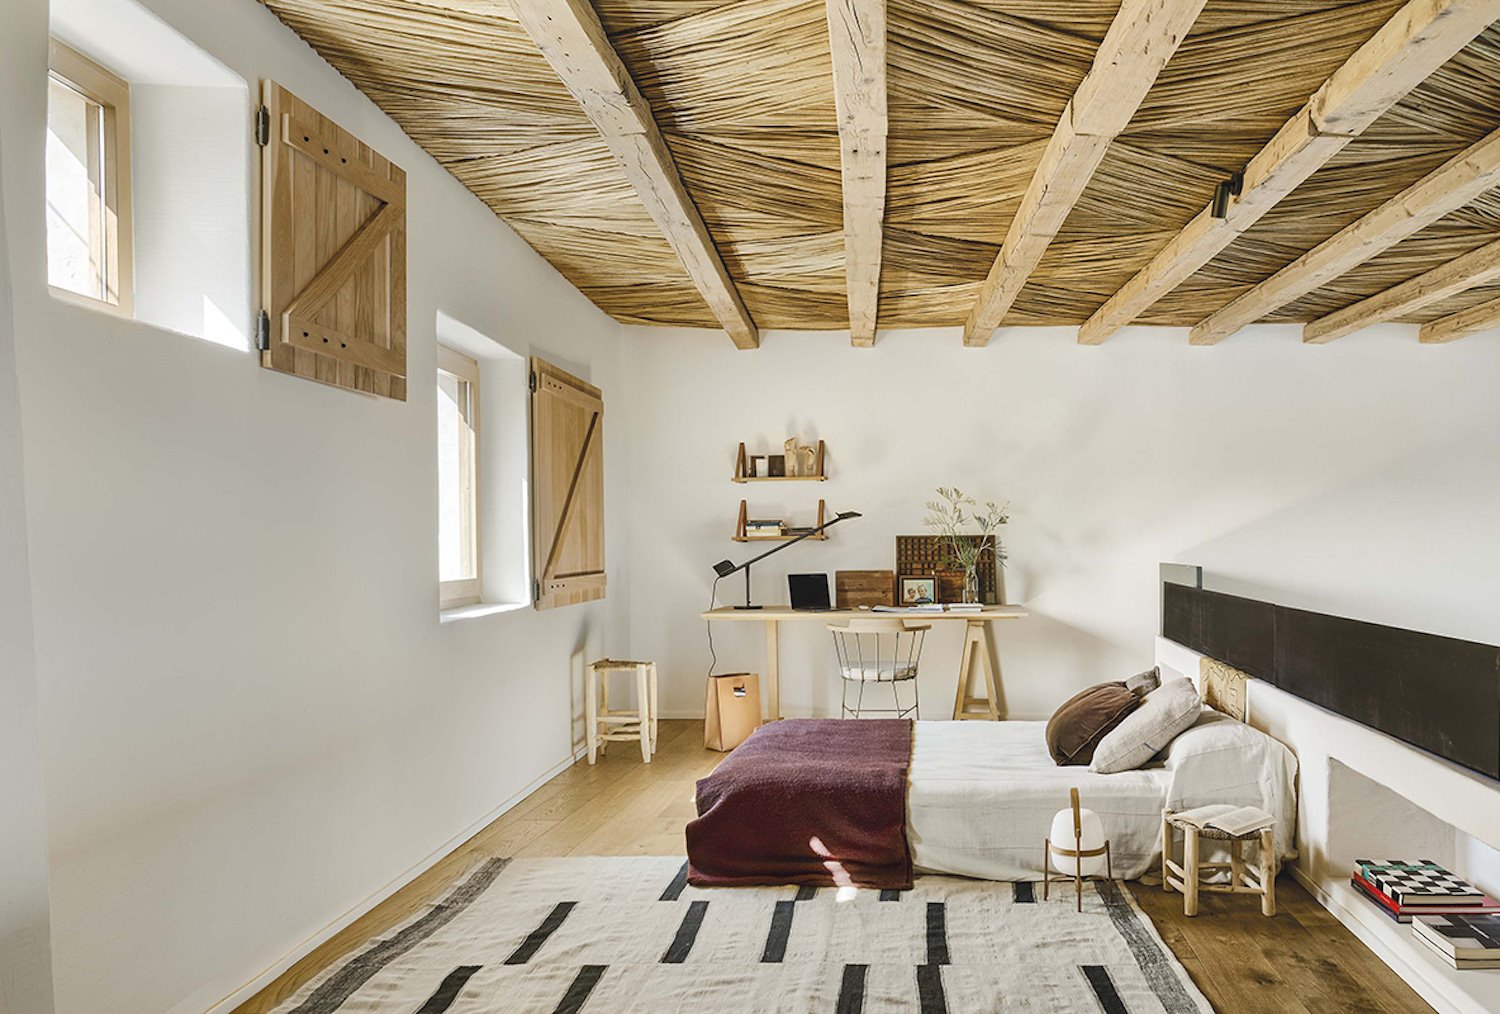 Casa con techos de madera y vigas de Sandra Tarruella